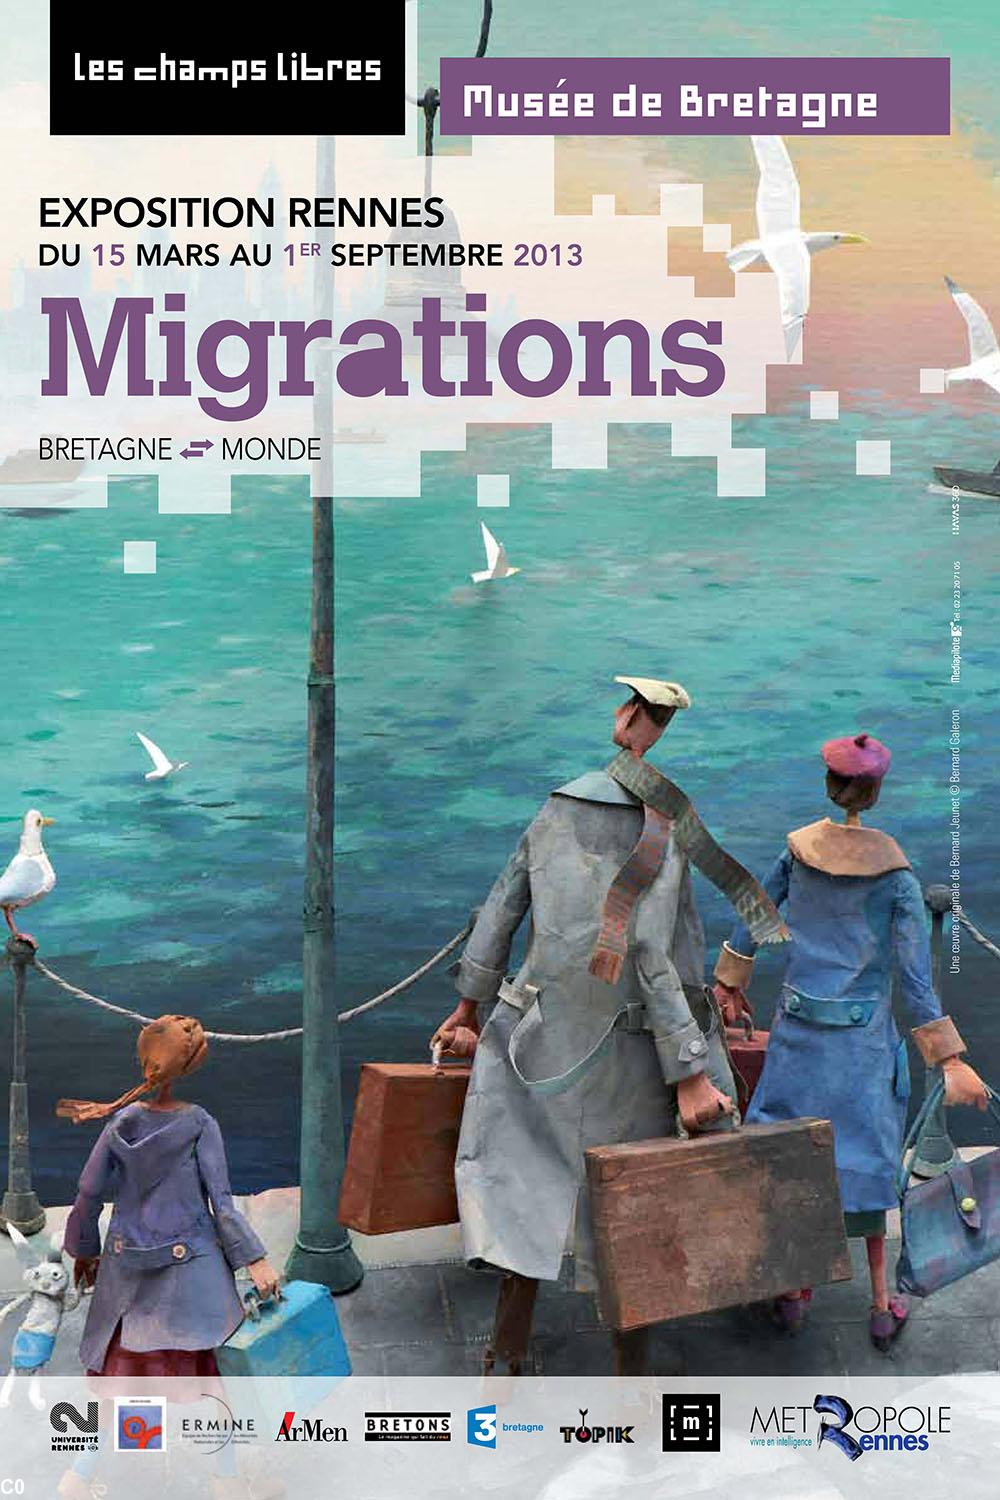 Un tableau de Bernard Jeunet pour l'affiche de l'exposition Migrations / Divroañ à Rennes 15 mars au 1er septembre 2013.